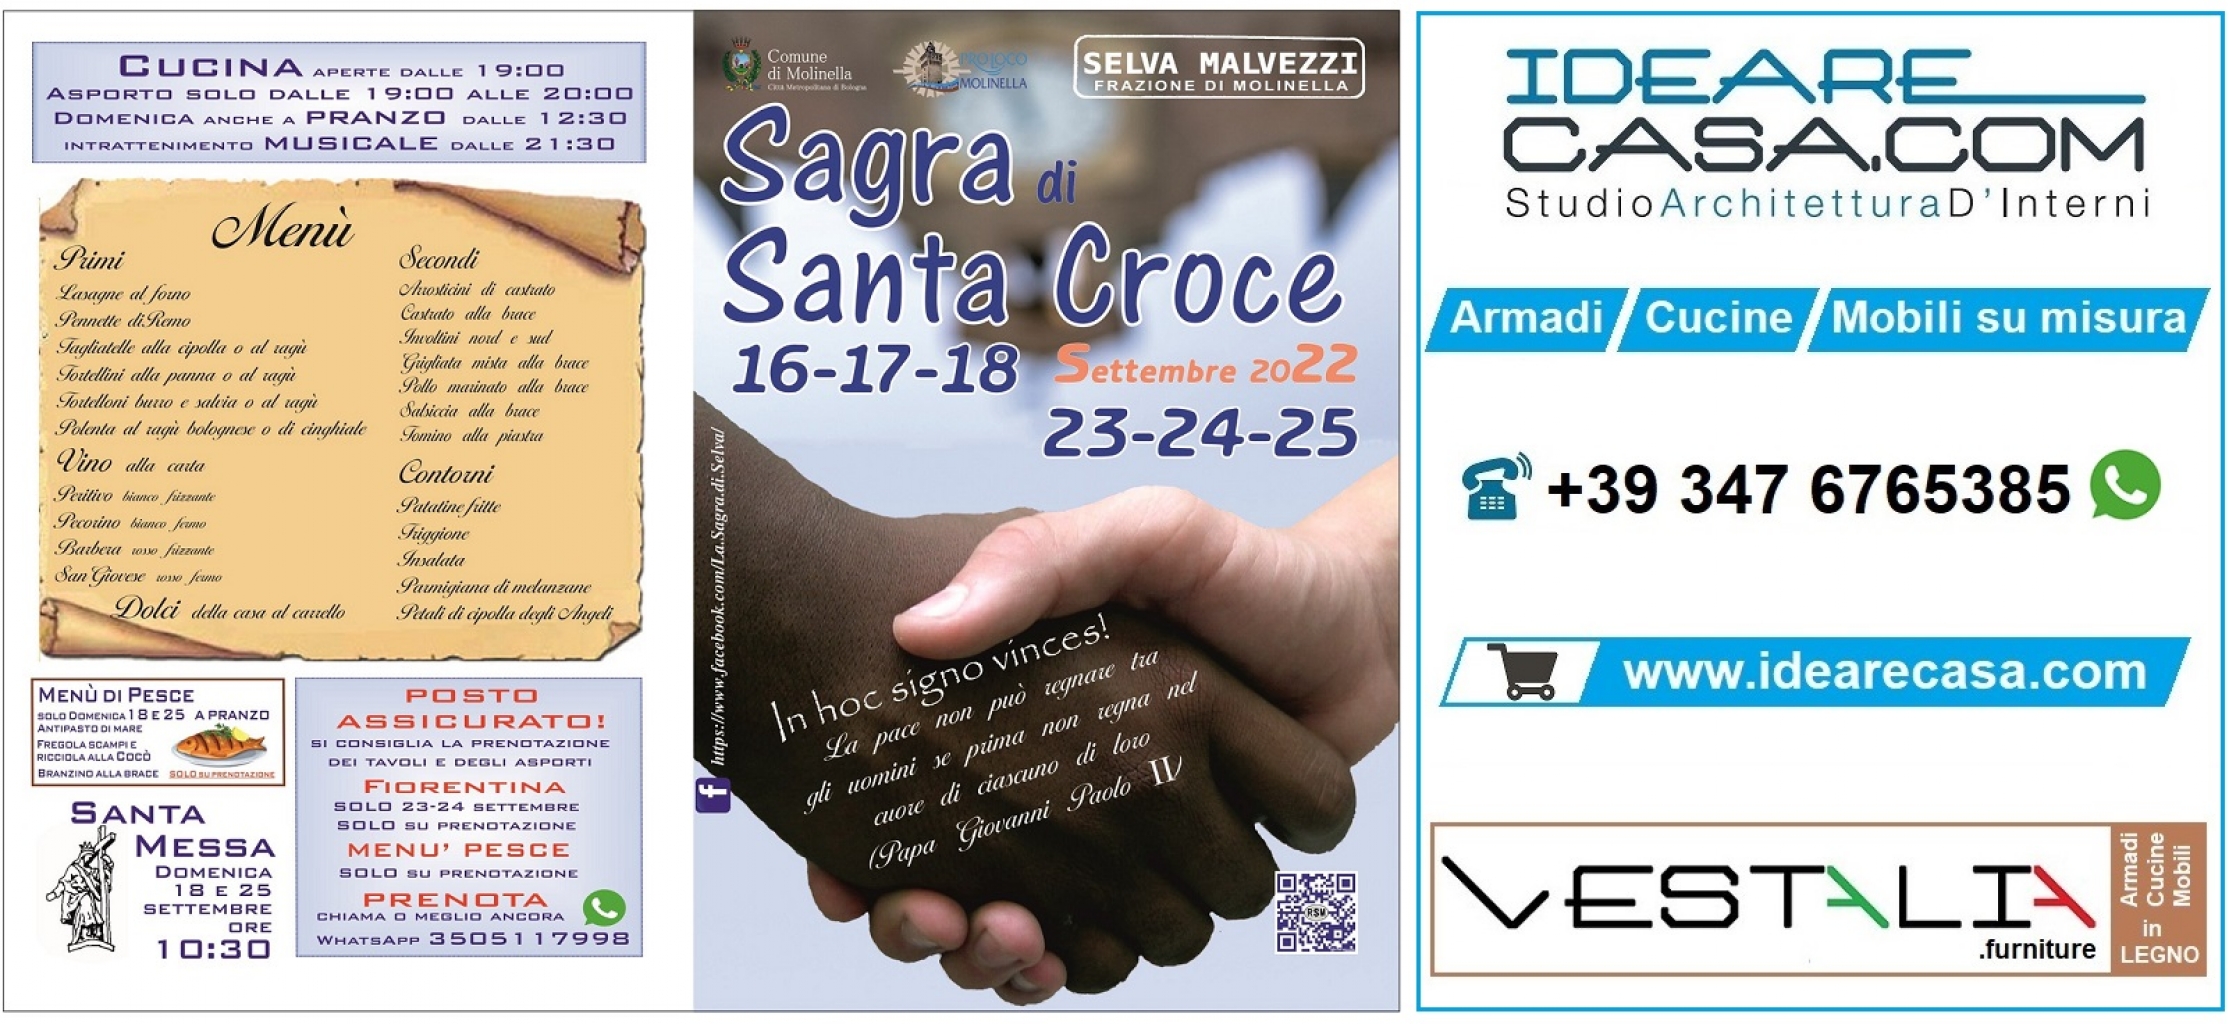 Festival of Selva Malvezzi 2022 in Molinella - Bologna. IdeareCasa.com, VESTALIA, CucineBologna, ArmadiBologna sponsor.